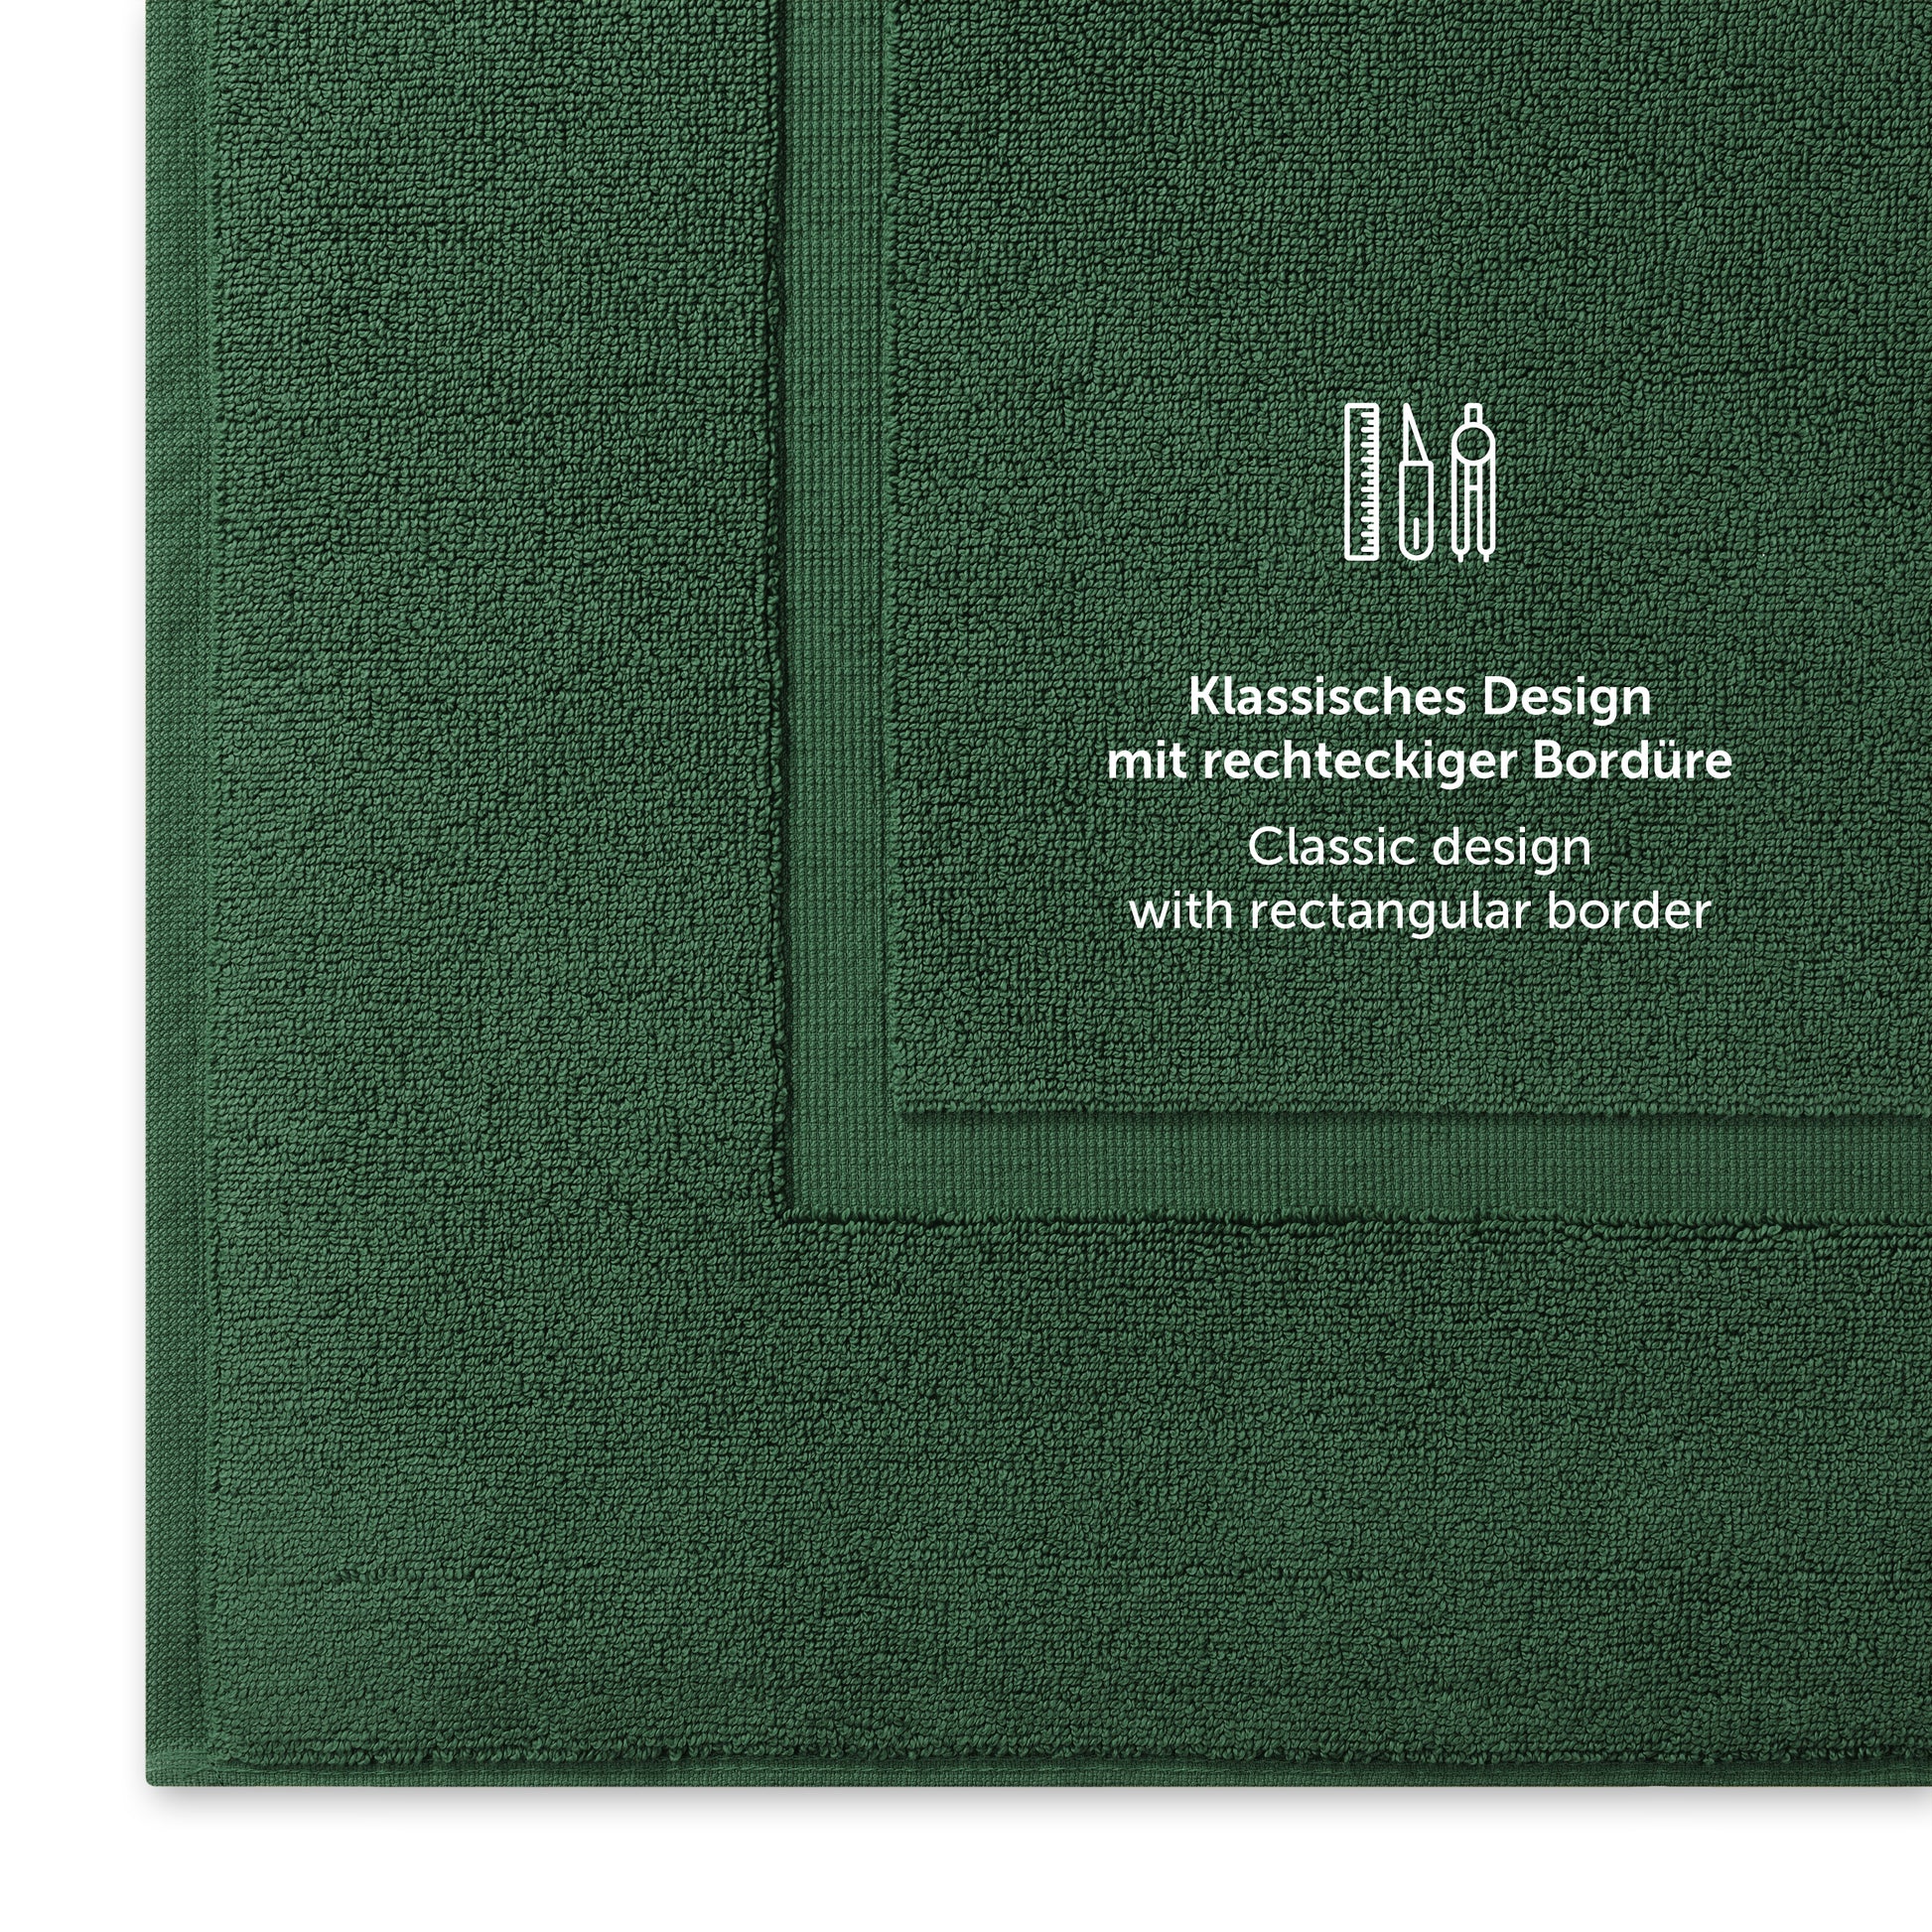 Gruenes Handtuch mit klassischem Design und Bordürendetail.